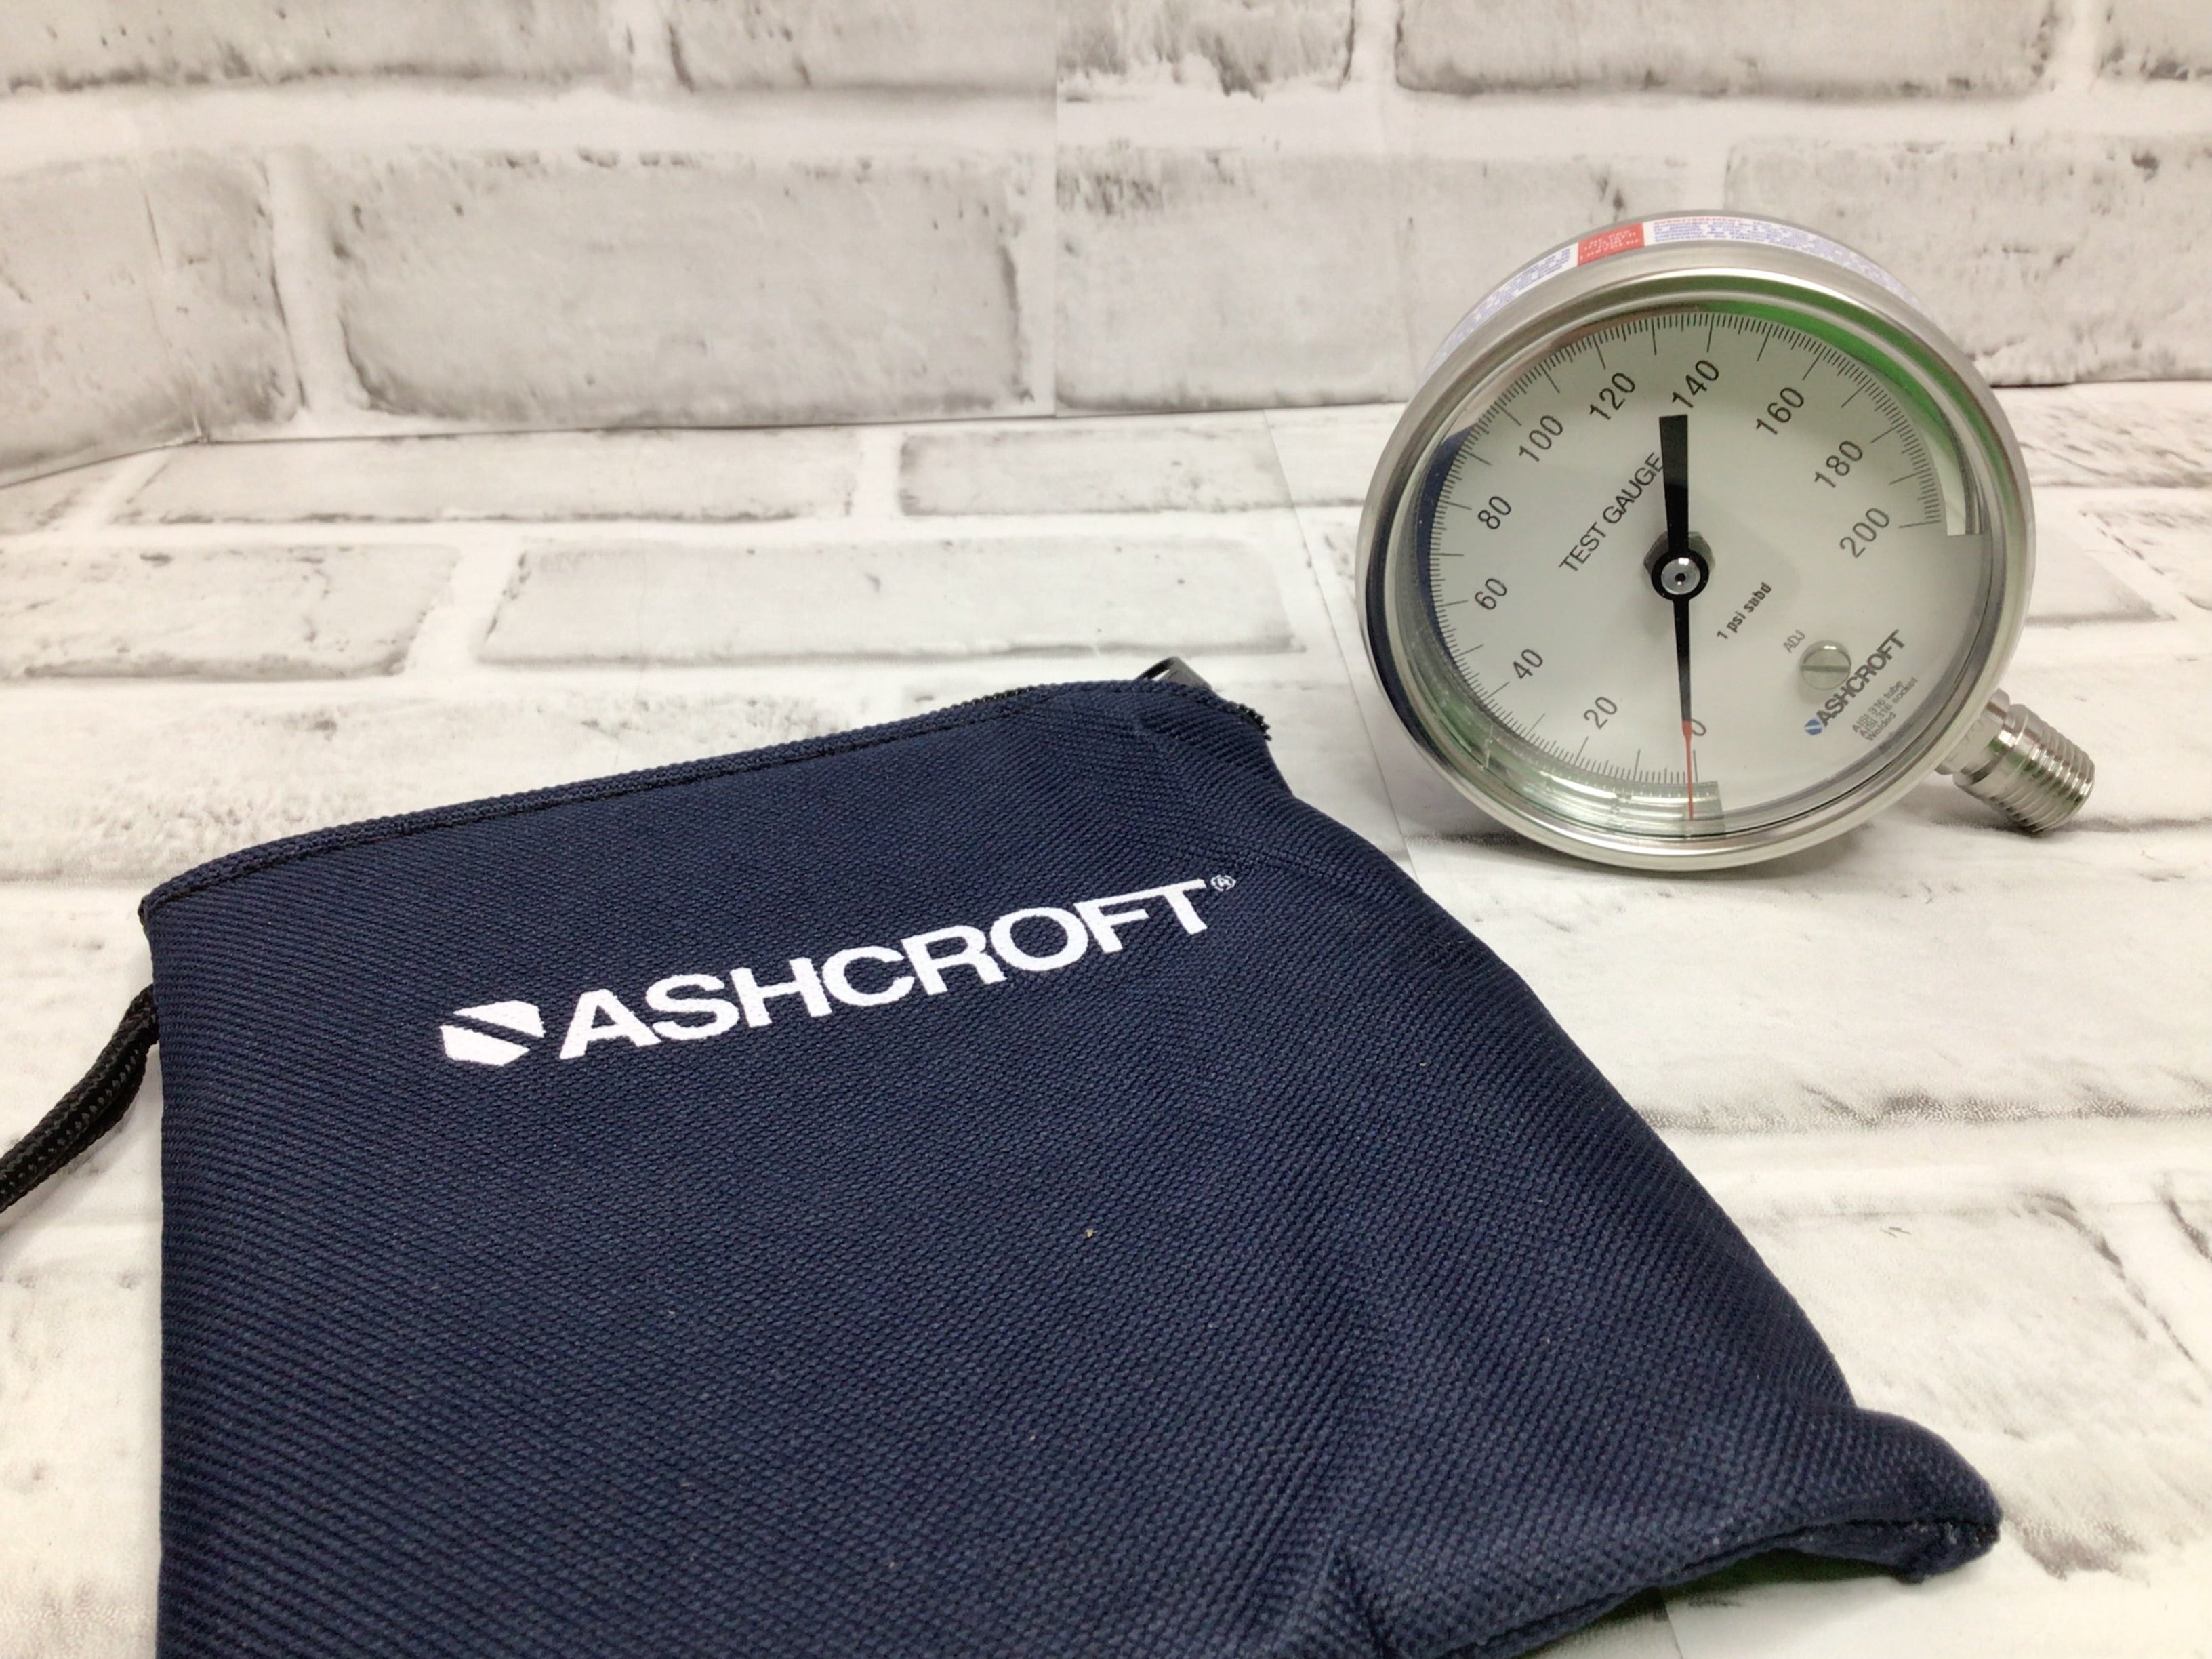 Ashcroft 30-1084S 02L 200 Psi Pressure Gauge, 0 To 200 Psi, 1/4 In Mnpt, (8136744042734)